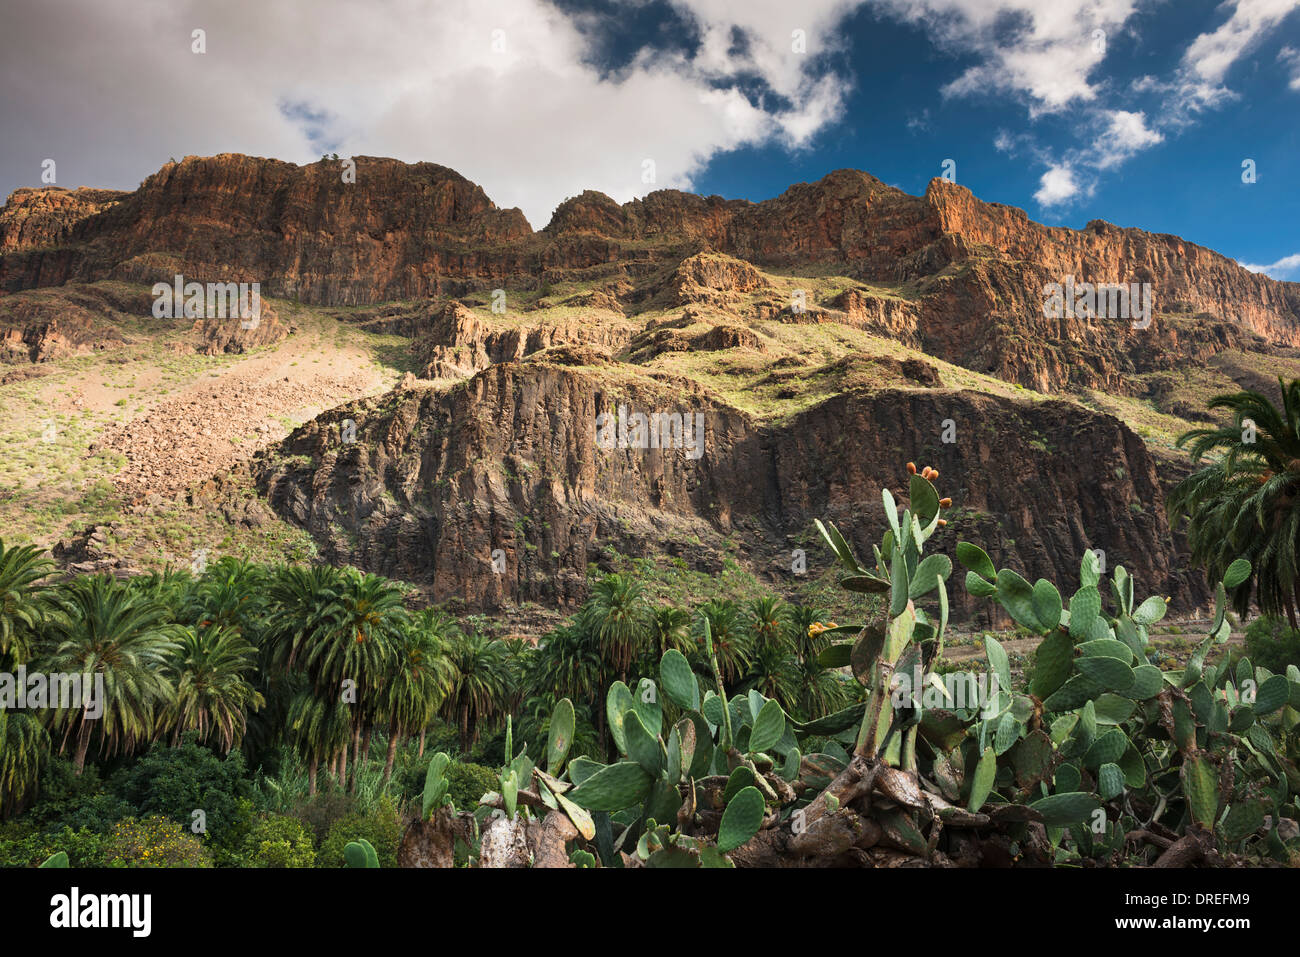 Das Dorf Arteara in den steilen Barranco de Fataga, durch eine dicke Abfolge von Trachyt und Sphäruliten Lavaströme Mauern Stockfoto